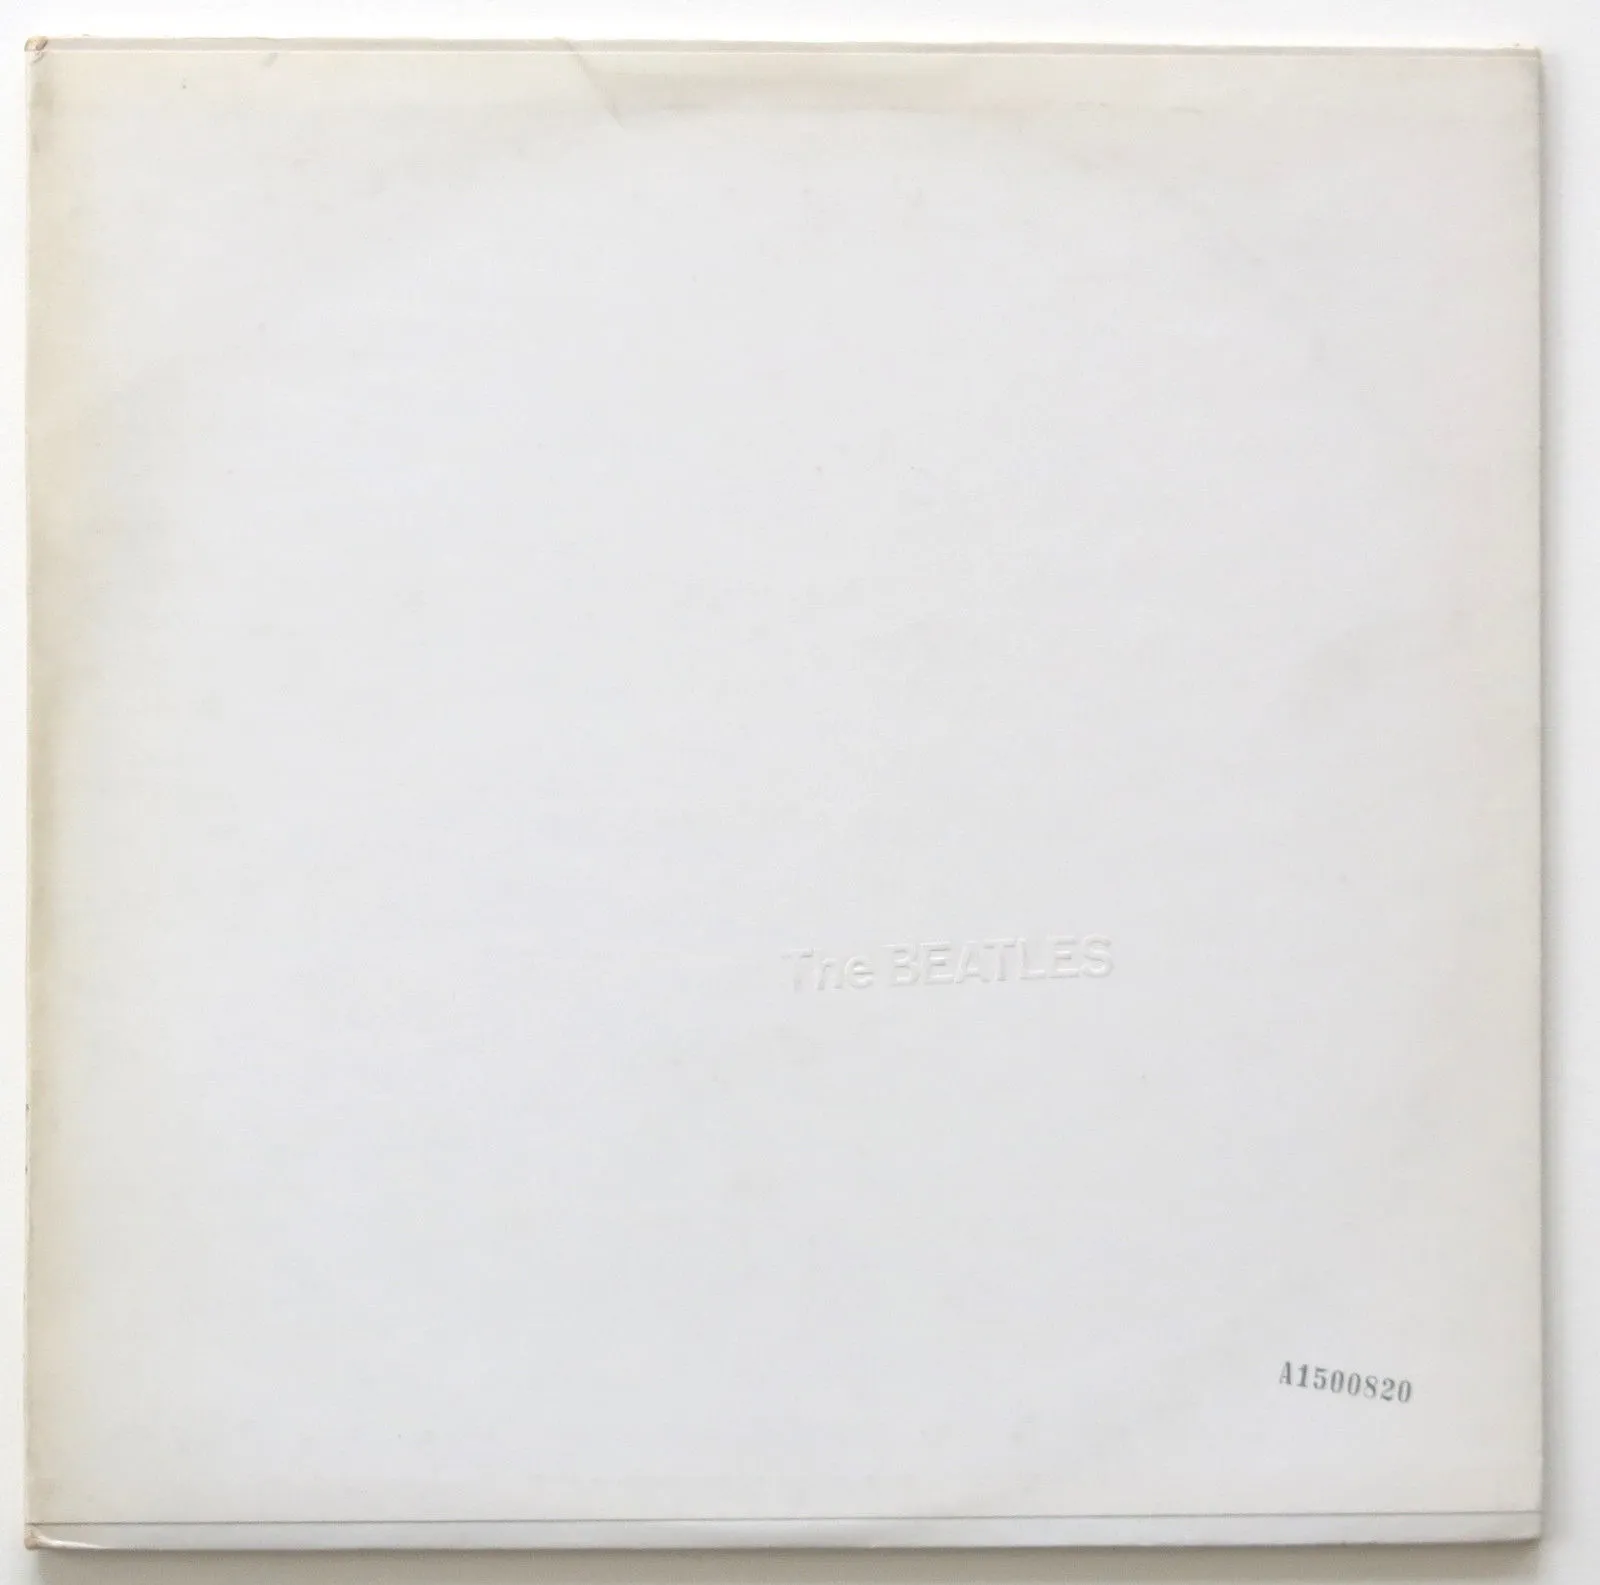 The Beatles: The White Album album cover